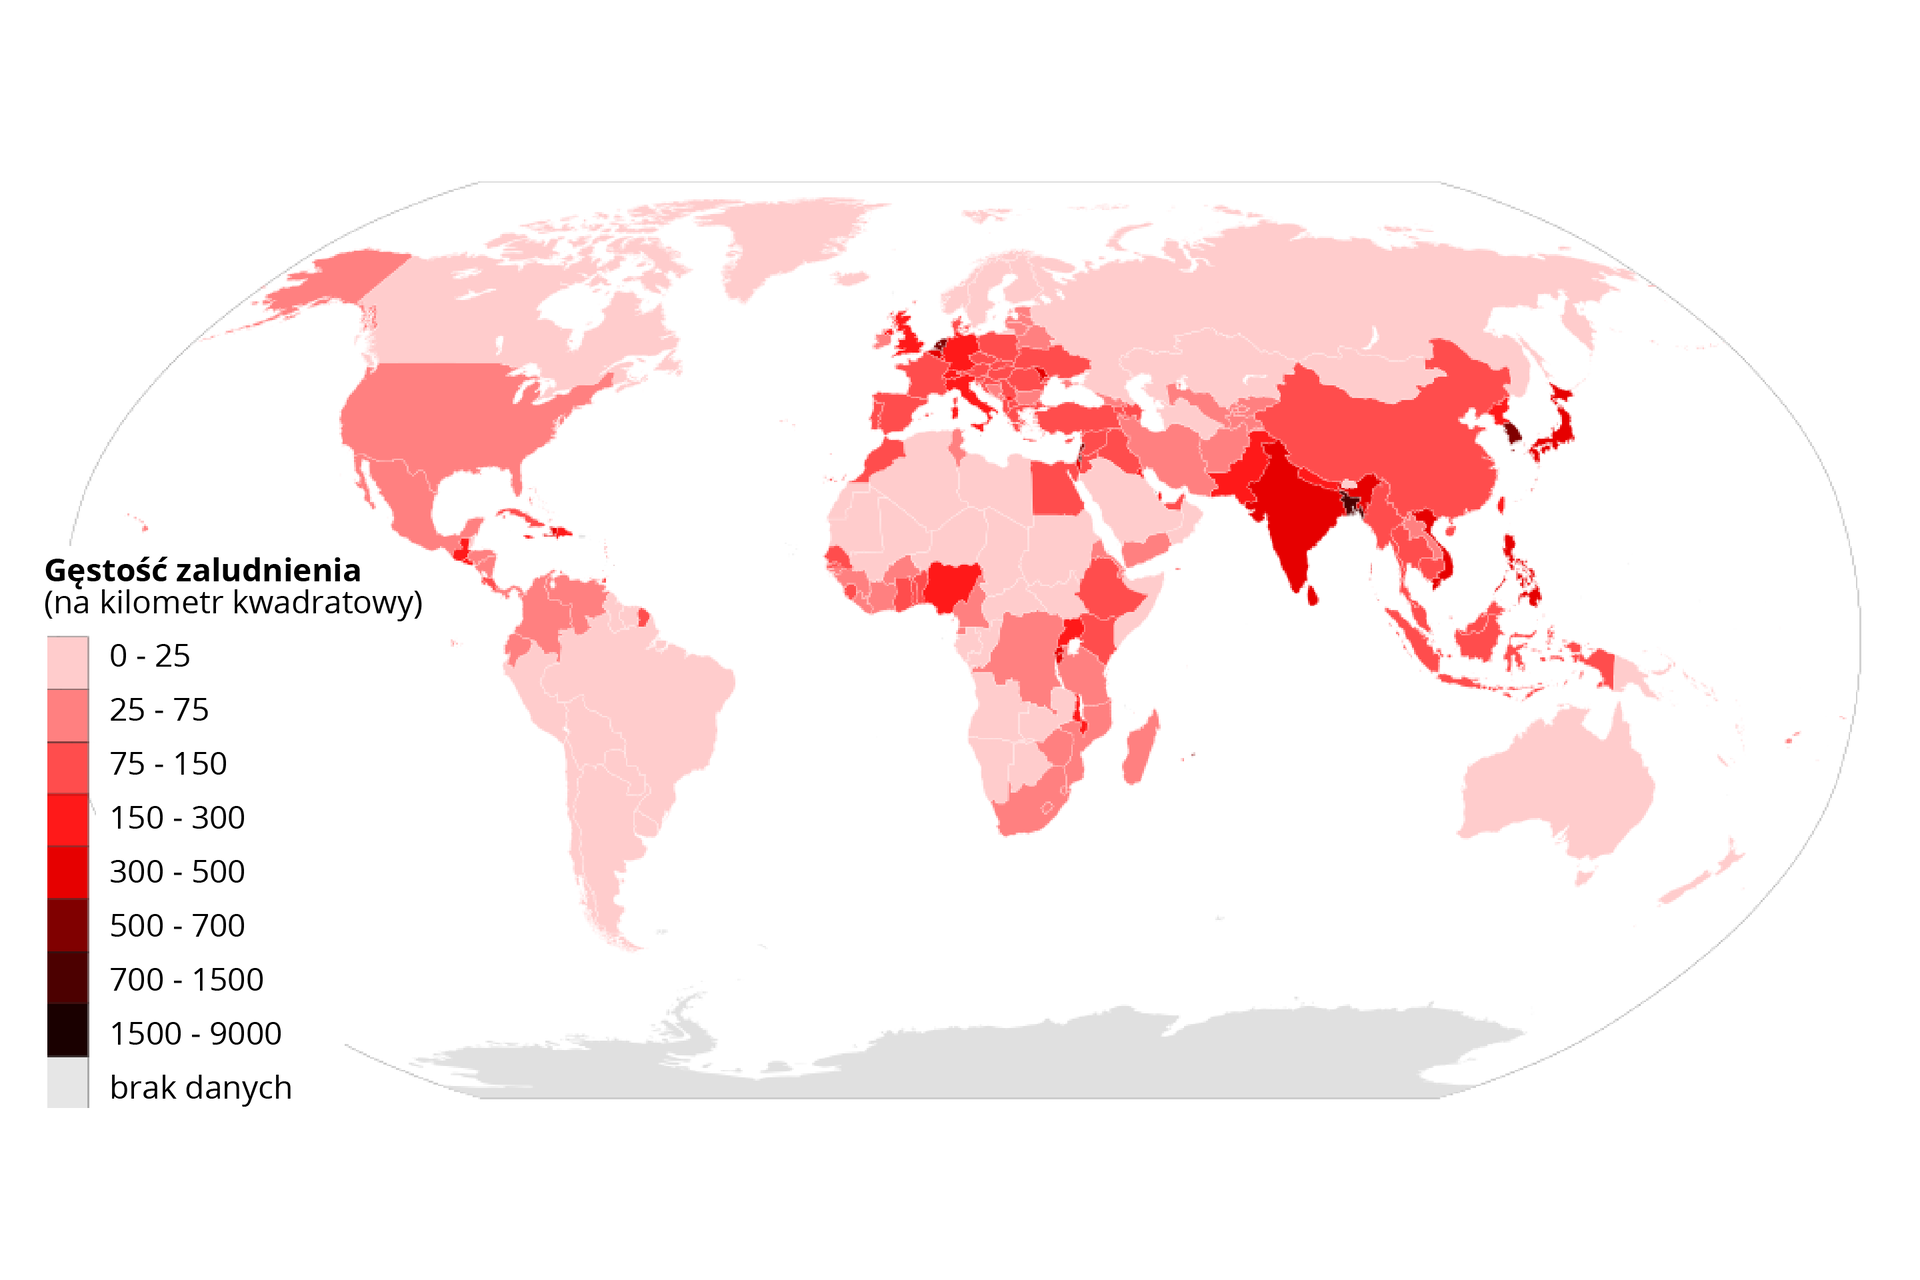 Na mapie świata zaznaczono gęstość zaludnienia w 2018 roku. Niska od zera do 25 osób na kilometr kwadratowy: Kanada, Grenlandia, Rosja, Skandynawia, Mongolia, Kazachstan, Turkmenistan, Arabia Saudyjska, Oman, większość krajów afrykańskich, Australia, Papua-Nowa Gwinea, kraje Ameryki Południowej z wyjątkiem Ekwadoru, Kolumbii, Wenezueli, gdzie gęstość zaludnienia wynosi od 25 do 75 osób na kilometr kwadratowy oraz Gujany Francuskiej, w której gęstość zaludnienia wynosi od 75 do 150 osób na kilometr kwadratowy. W Europie dominuje gęstość zaludnienia od 75 do 150 osób na kilometr kwadratowy. Gęstość ta dotyczy także między innymi Chin, Indonezji, Malezji, Japonii, nieliczne kraje afrykańskie: Egipt, Etiopia, Kenia, Uganda, Nigeria, Ghana, Senegal, Maroko, Irak, Syria, Izrael, Jordan, Emiraty Arabskie, Gwatemala, Kostaryka, Kuba, Dominikana. Największą gęstość zaludnienia odnotowuje się w Bangladeszu - od 700 do 1500 osób na kilometr kwadratowy. W Korei Południowej od 500 do 700 osób na kilometr kwadratowy. W przedziale od 300 do 500 osób na kilometr kwadratowy: Indie, Wietnam. Pozostałe kraje: przedział od 25 do 75 osób na kilometr kwadratowy.       